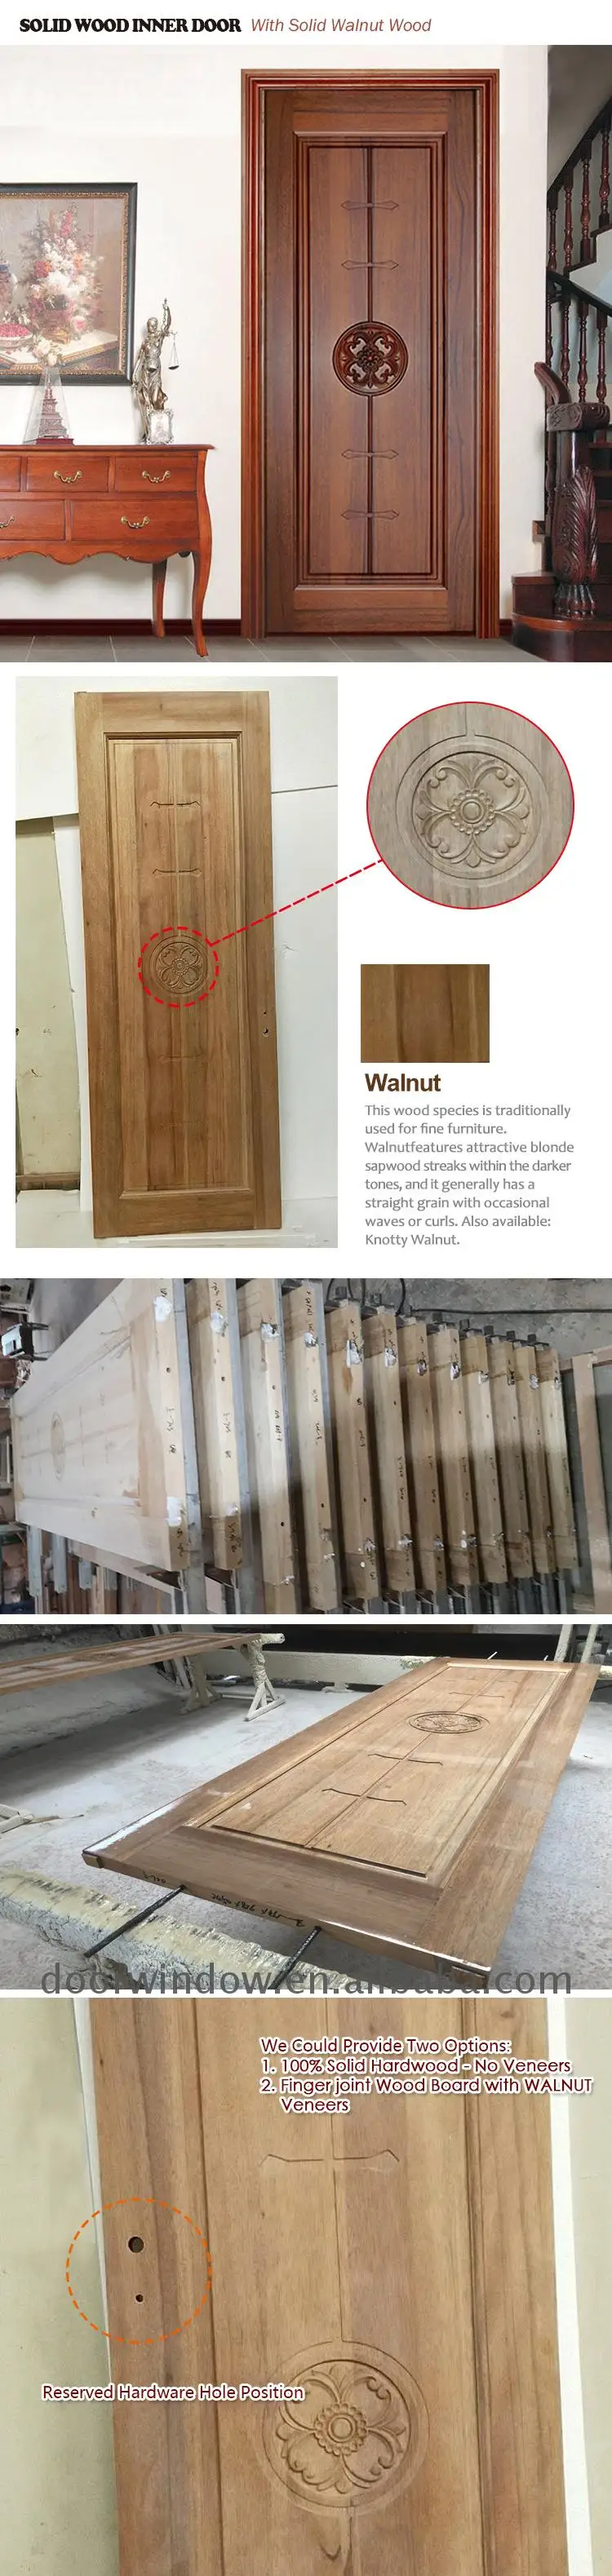 Simple wood in door patterns solid wood door oak wooden profiles for window and door profiles